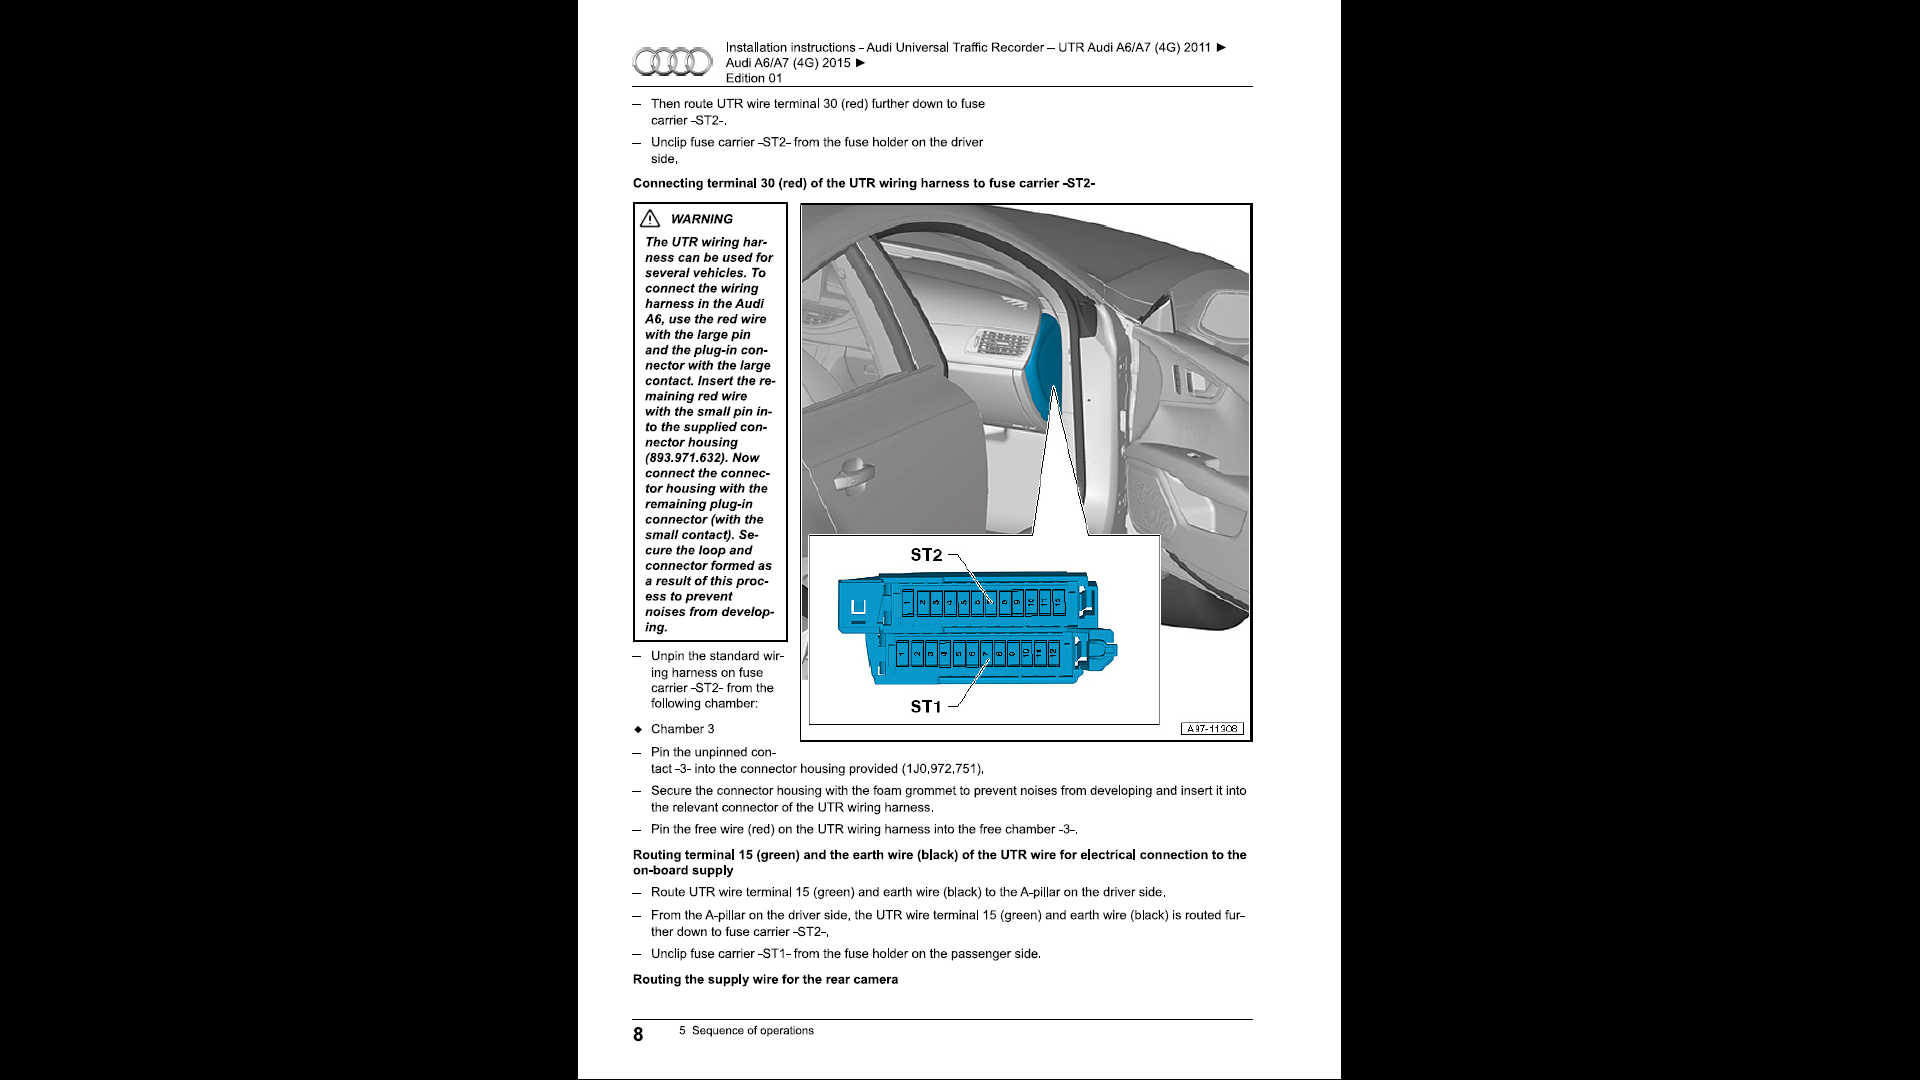 How to Install an Audi UTR dashcam | Audi-Sport.net